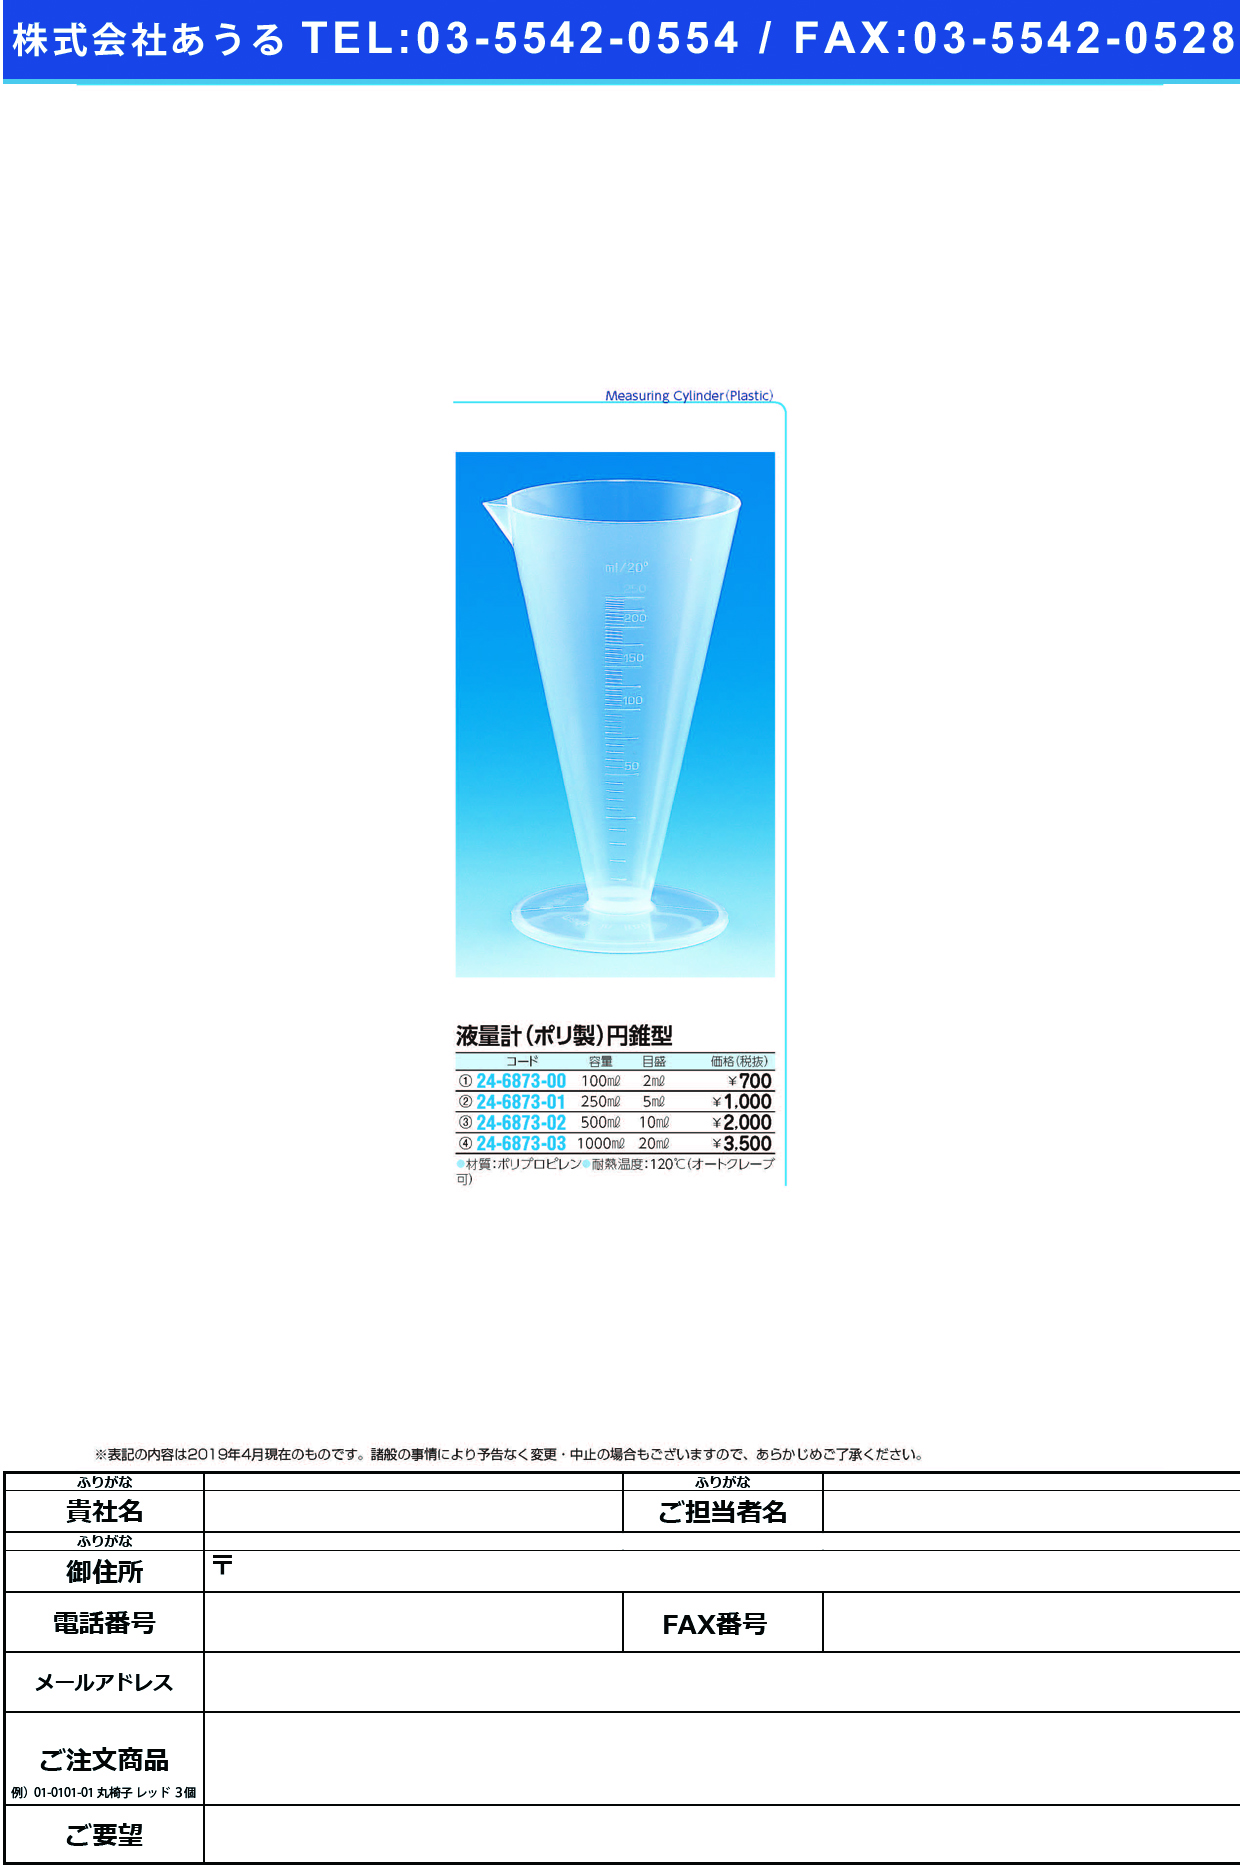 (24-6873-00)液量計（ＰＰ製）円錐型 422(100ML) ｴｷﾘｮｳｹｲ(PP)ｴﾝｽｲｶﾞﾀ【1個単位】【2019年カタログ商品】